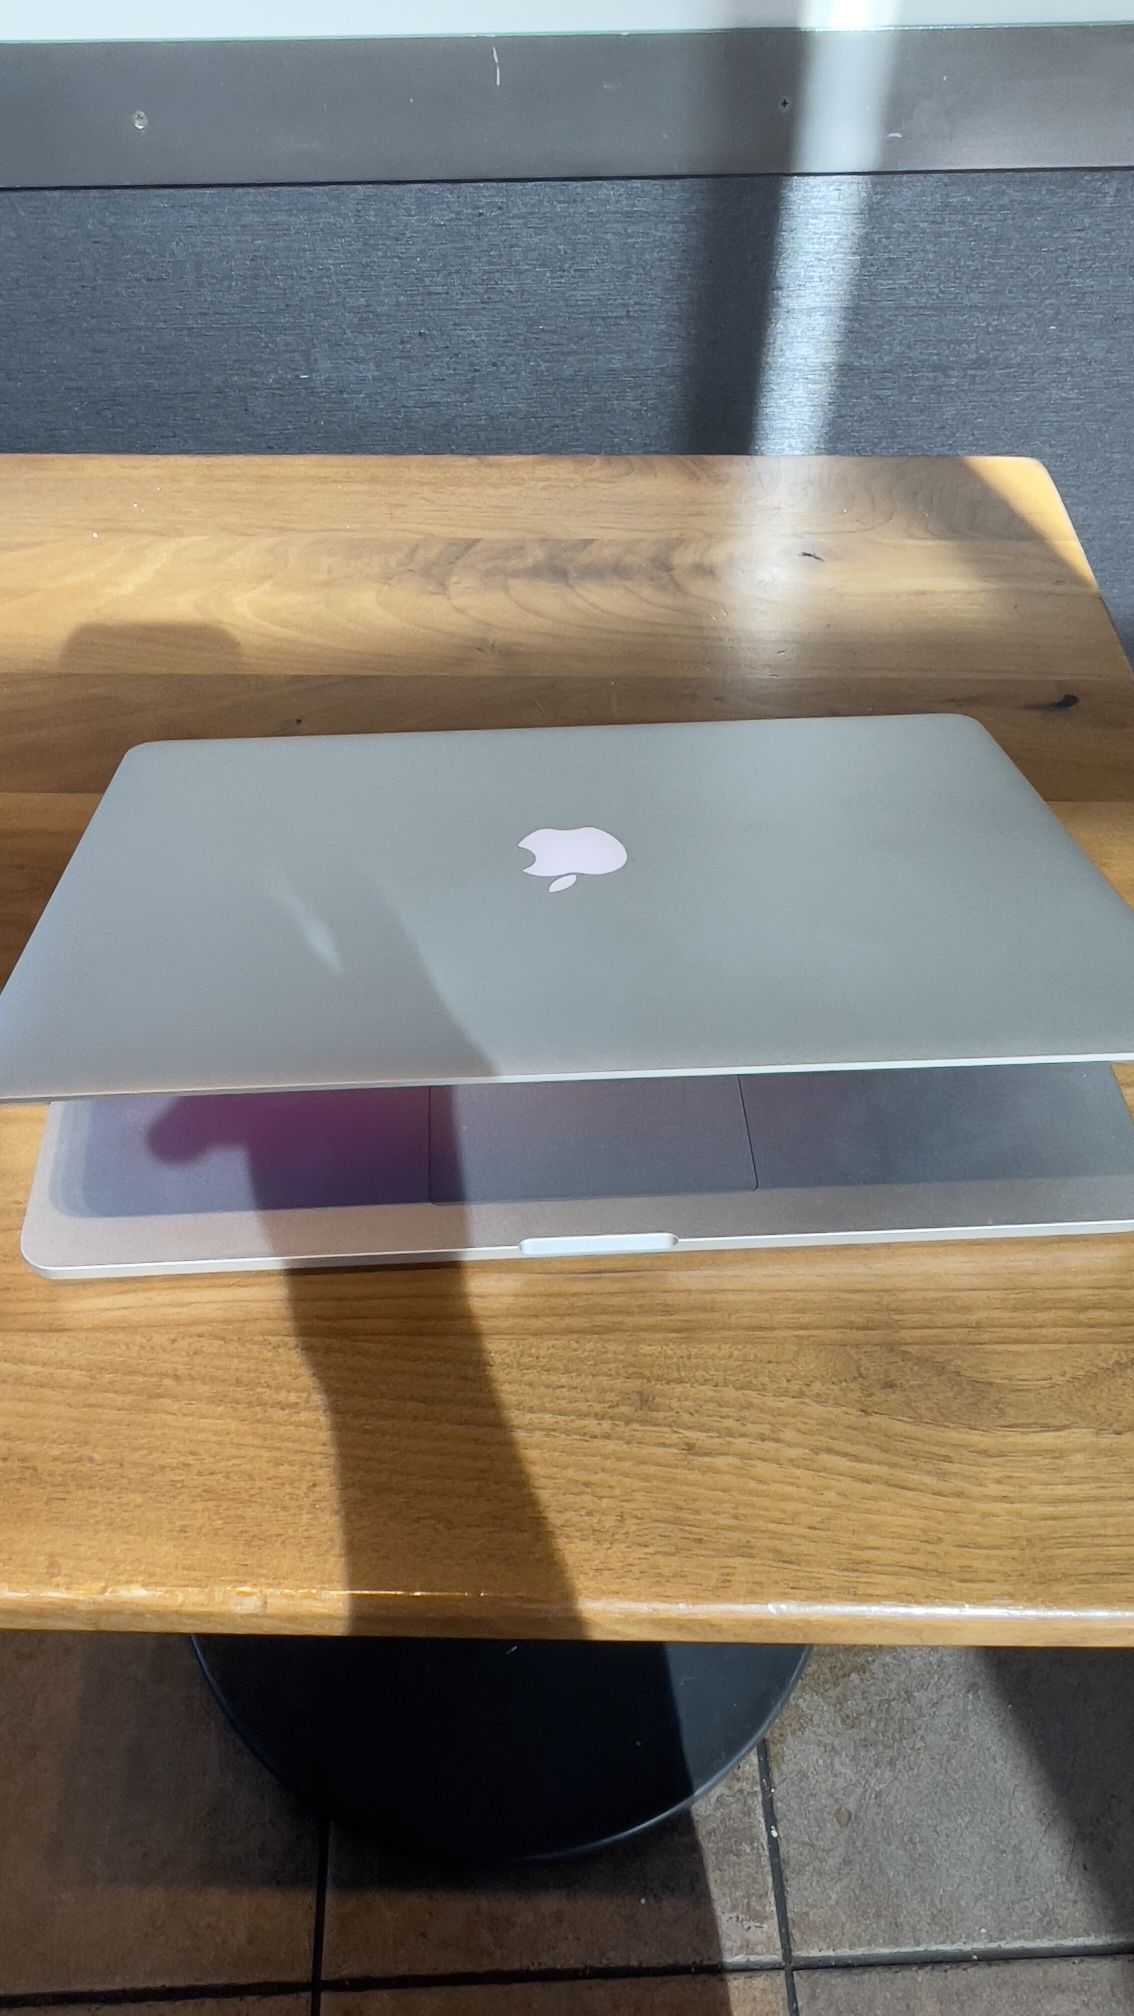 Apple MacBook 15” Retina Quad Core I7, 16GB Ram 256Gb SSD $375